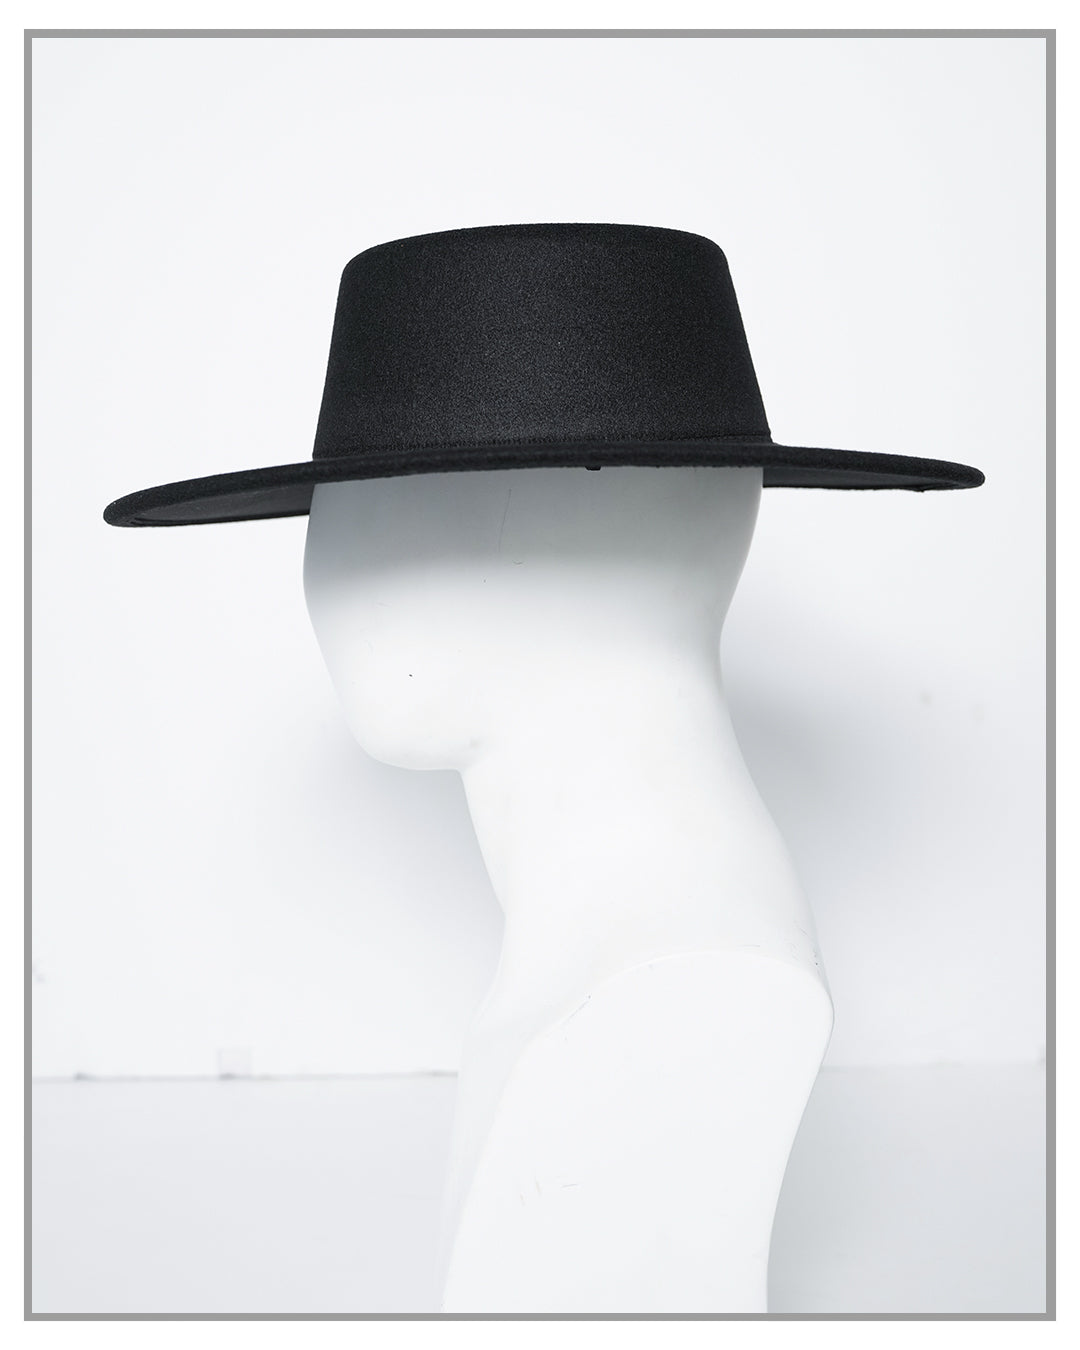 Black Boater Fedora Hat